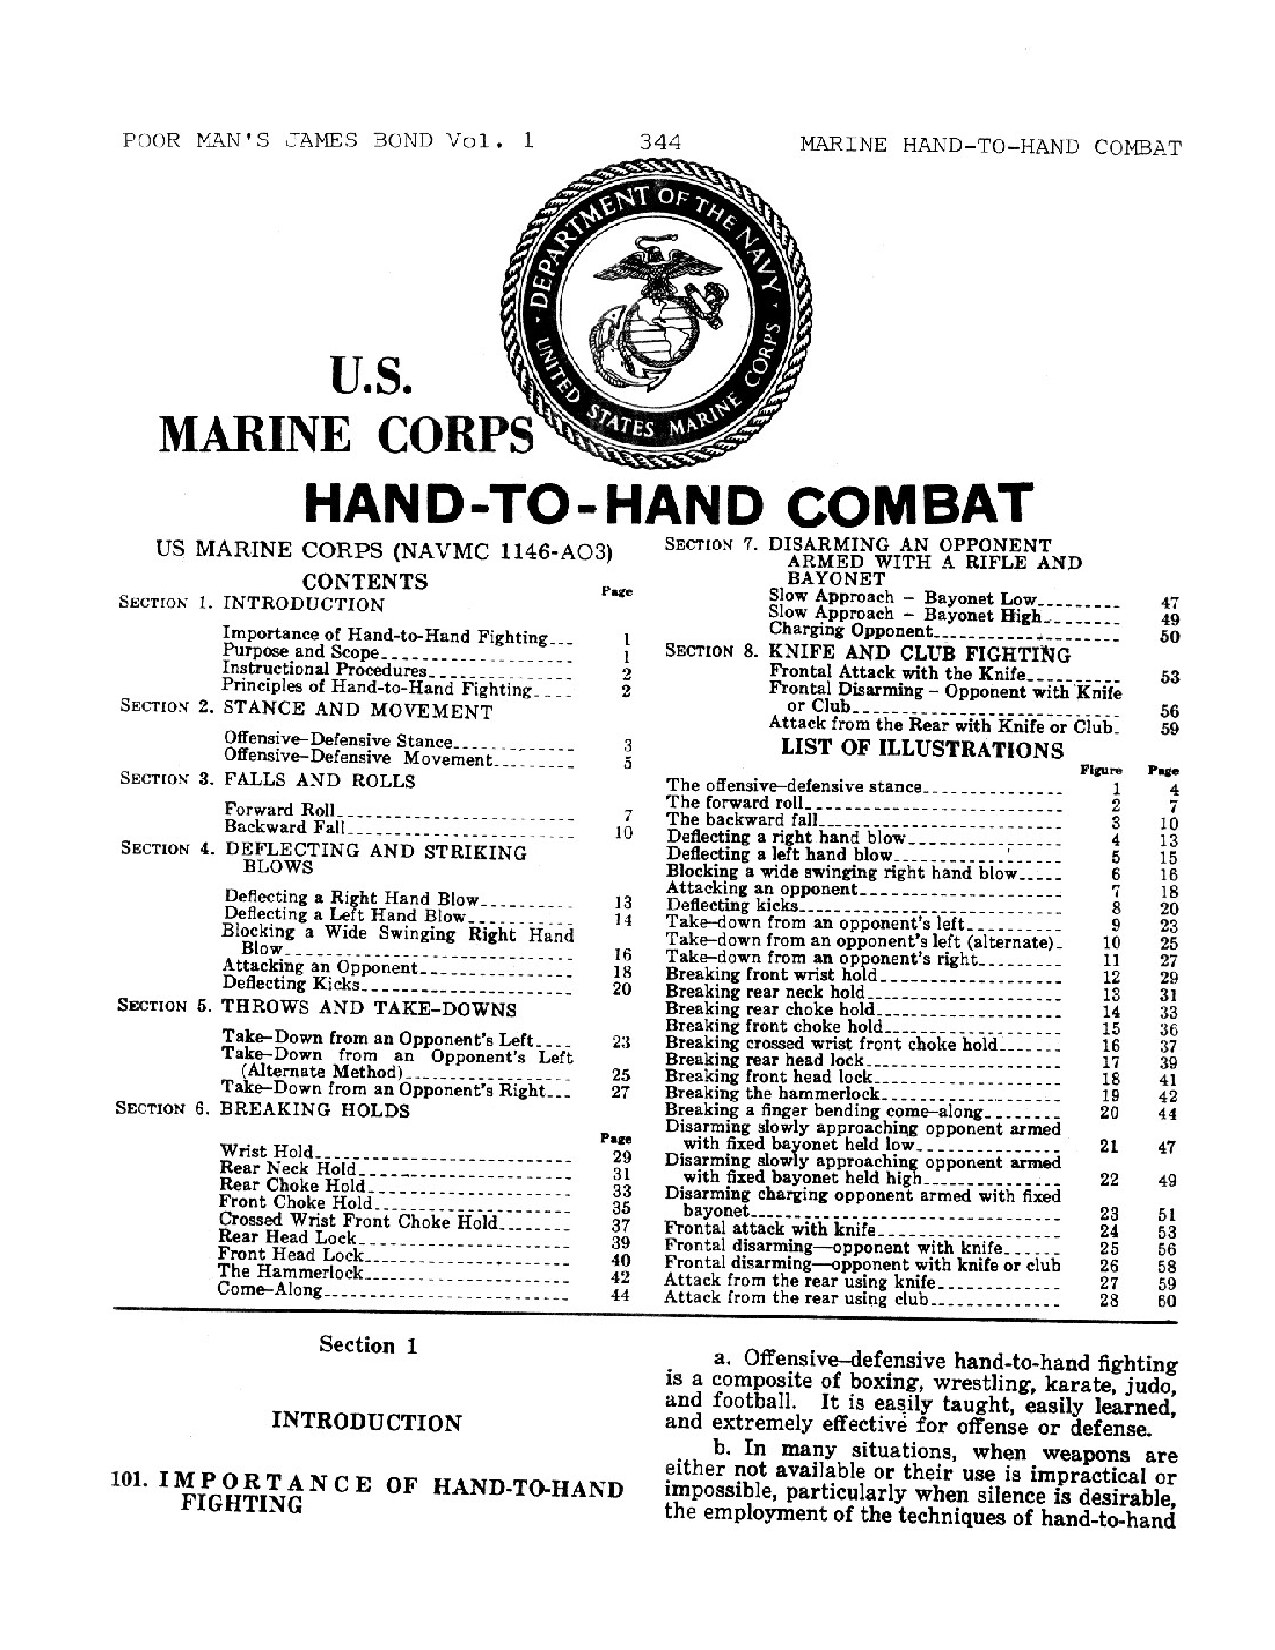 US Marine Corps - Hand to Hand Combat